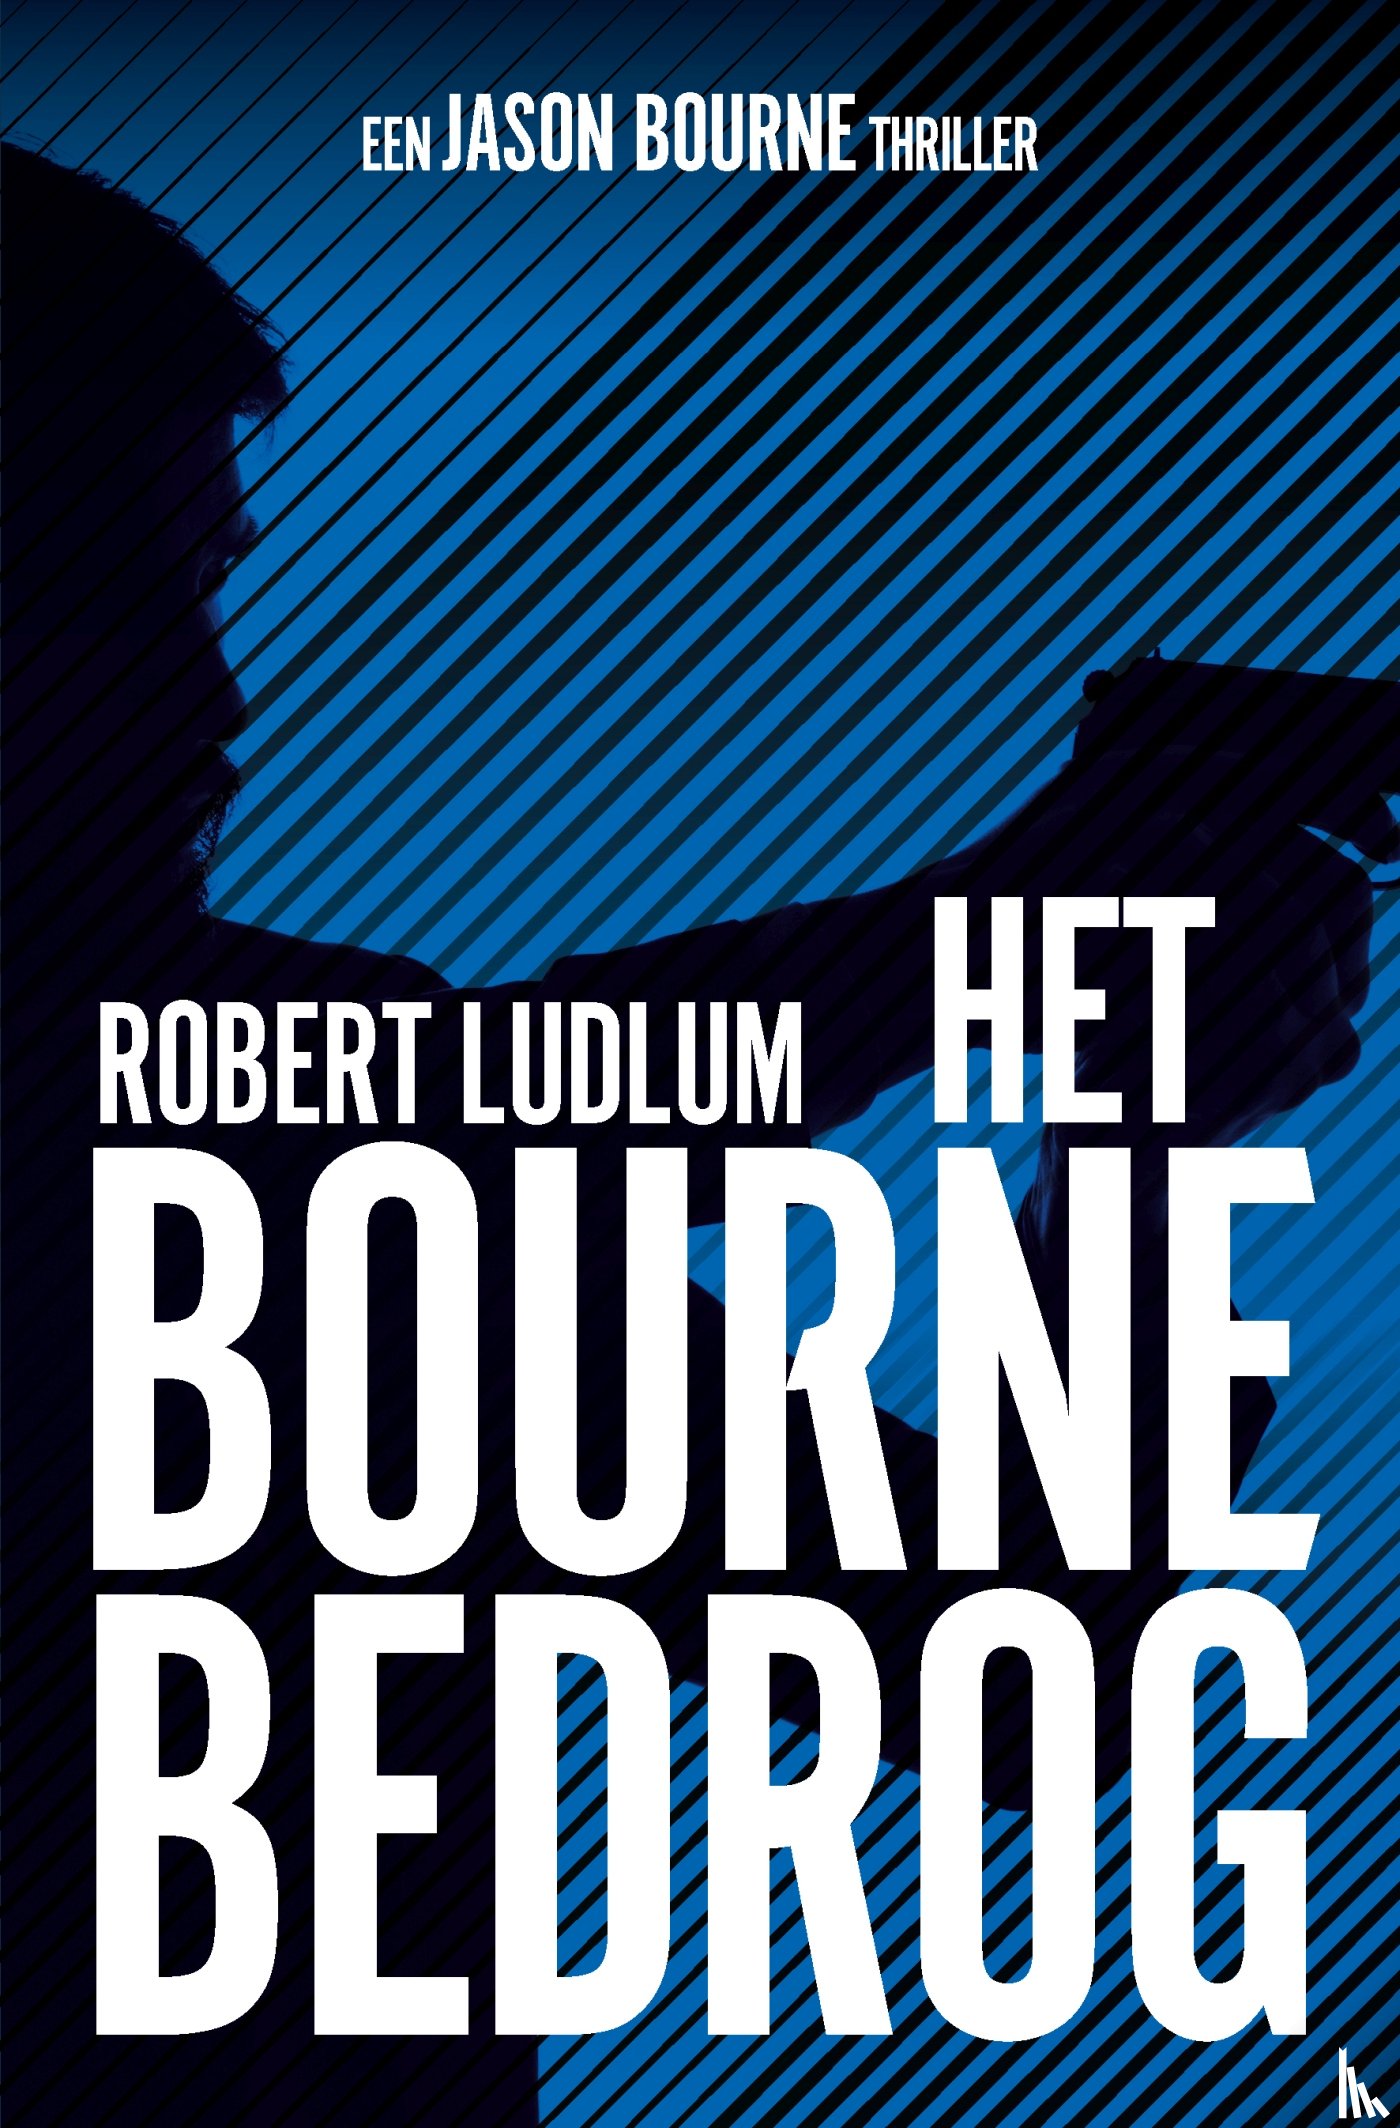 Ludlum, Robert - Het Bourne bedrog